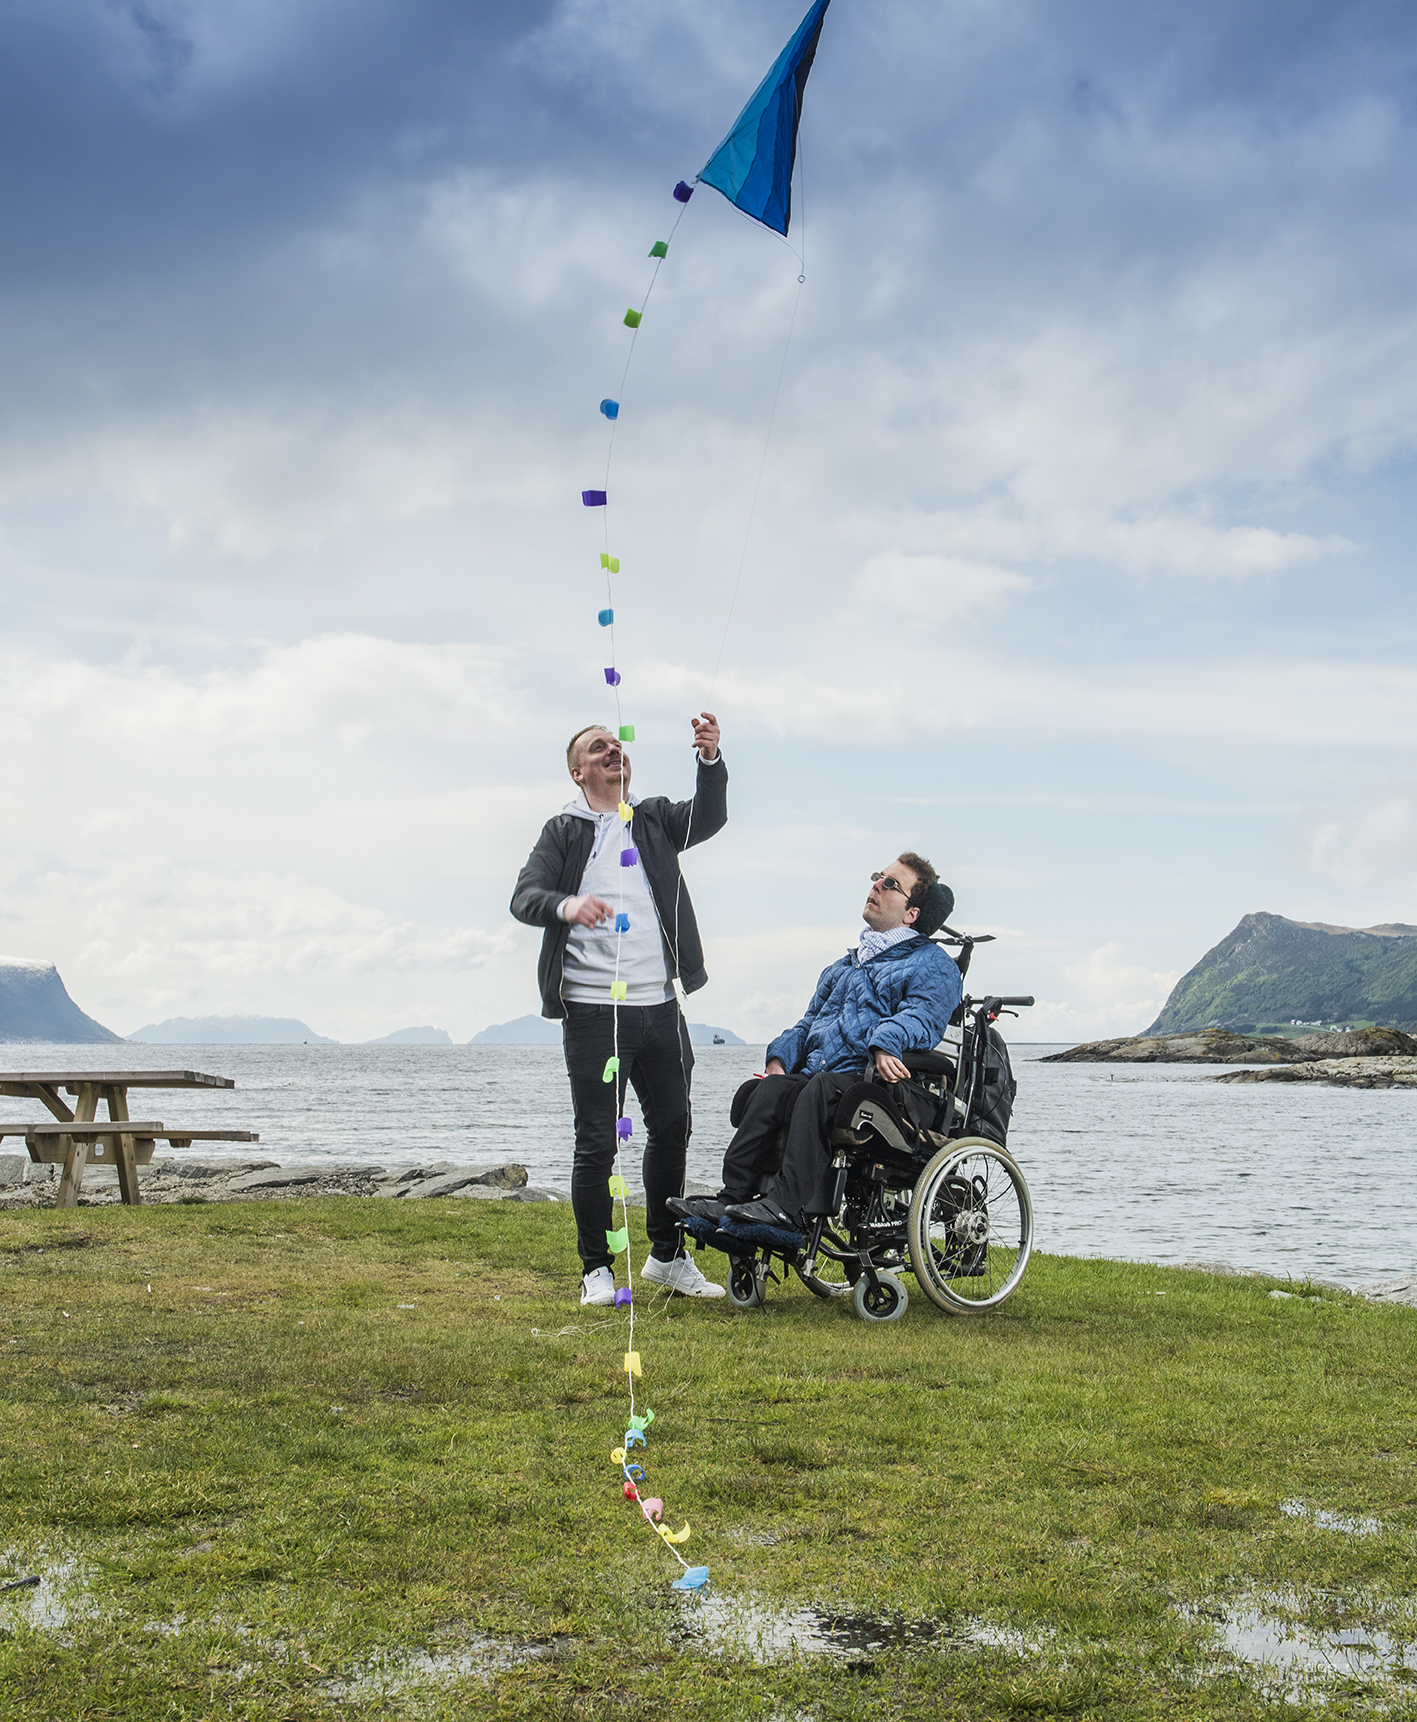 Bilde av mannlig assistent sammen med mann i rullestol. De står sammen på grønt gress foran hav og fjell, hvor assistenten holder i en drage som flyr i luften.